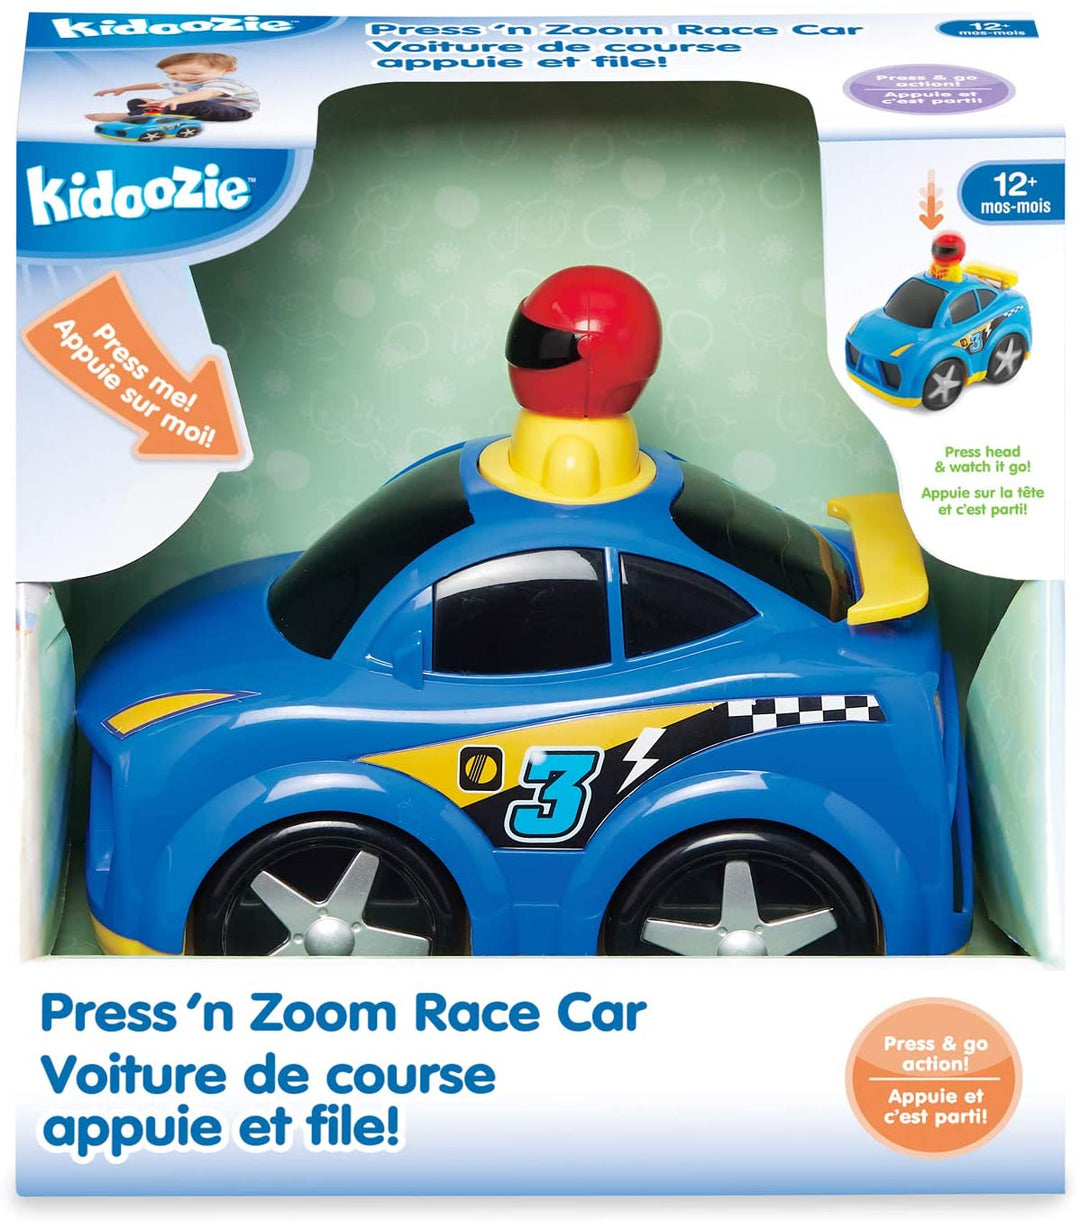 Press 'N Zoom Race Car